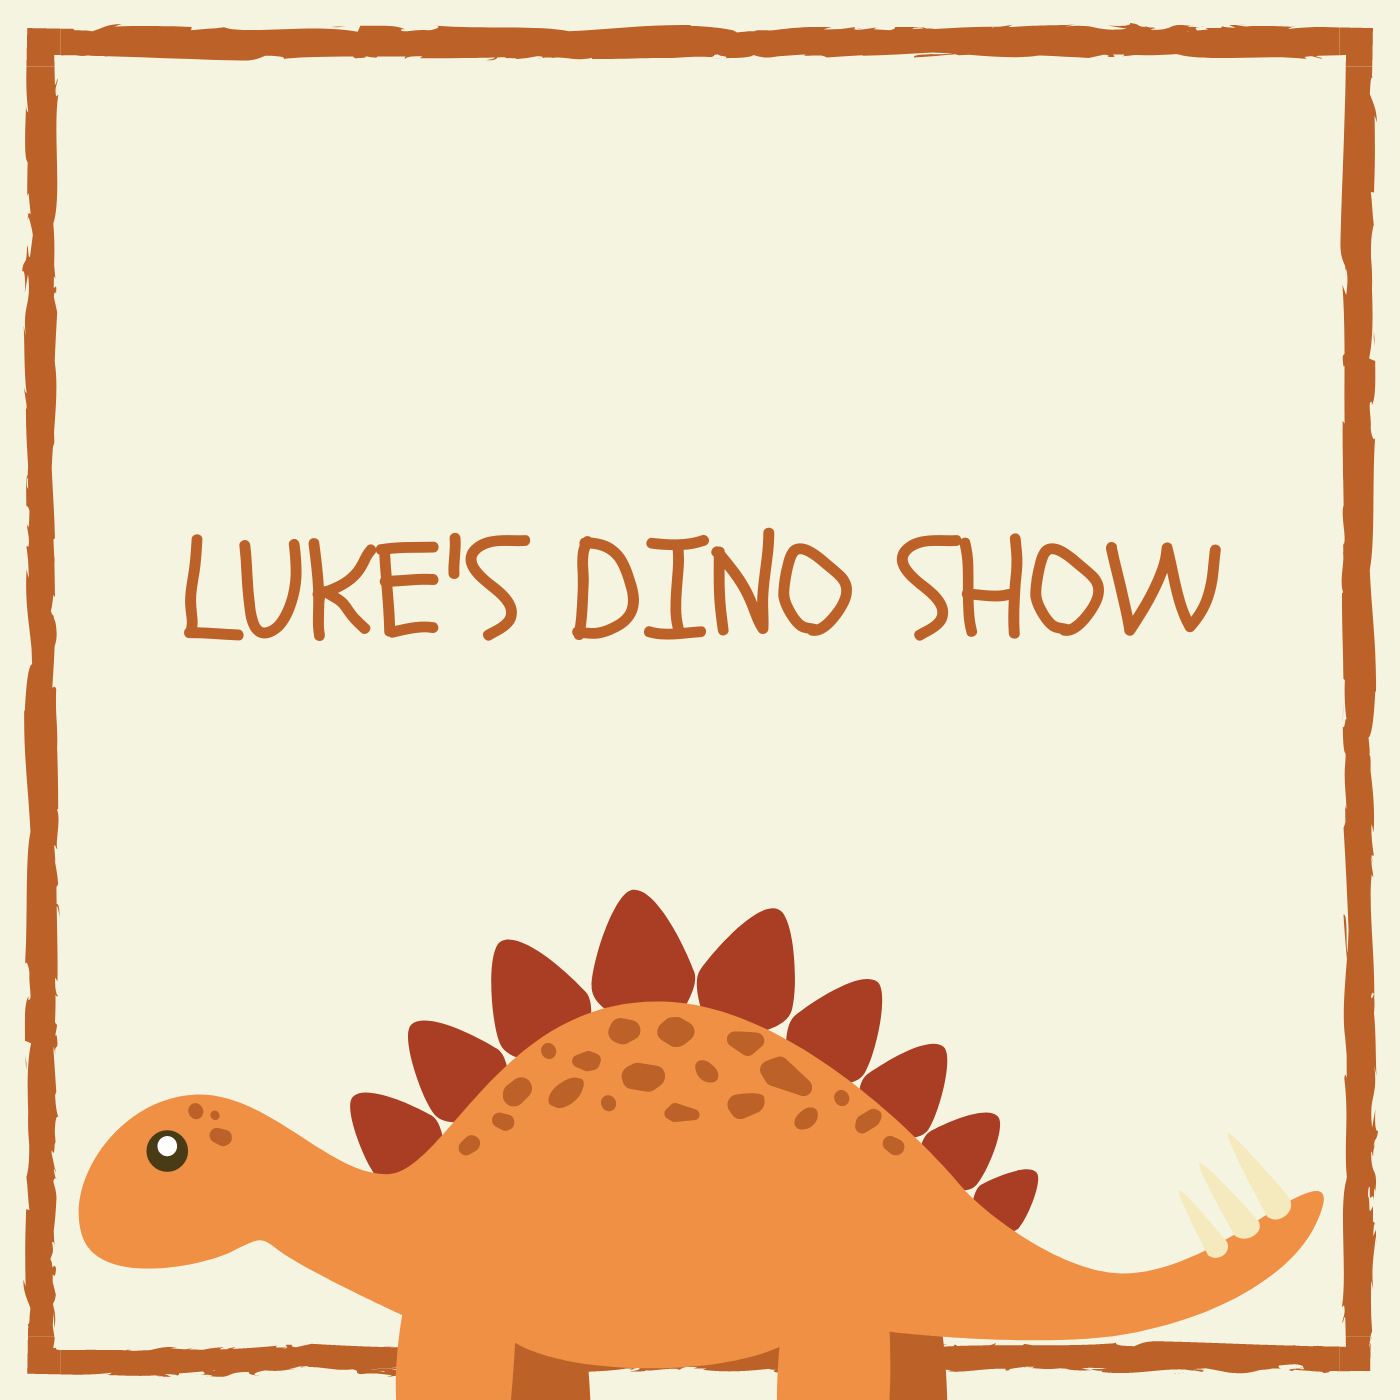 Artwork for Luke's Dino Show